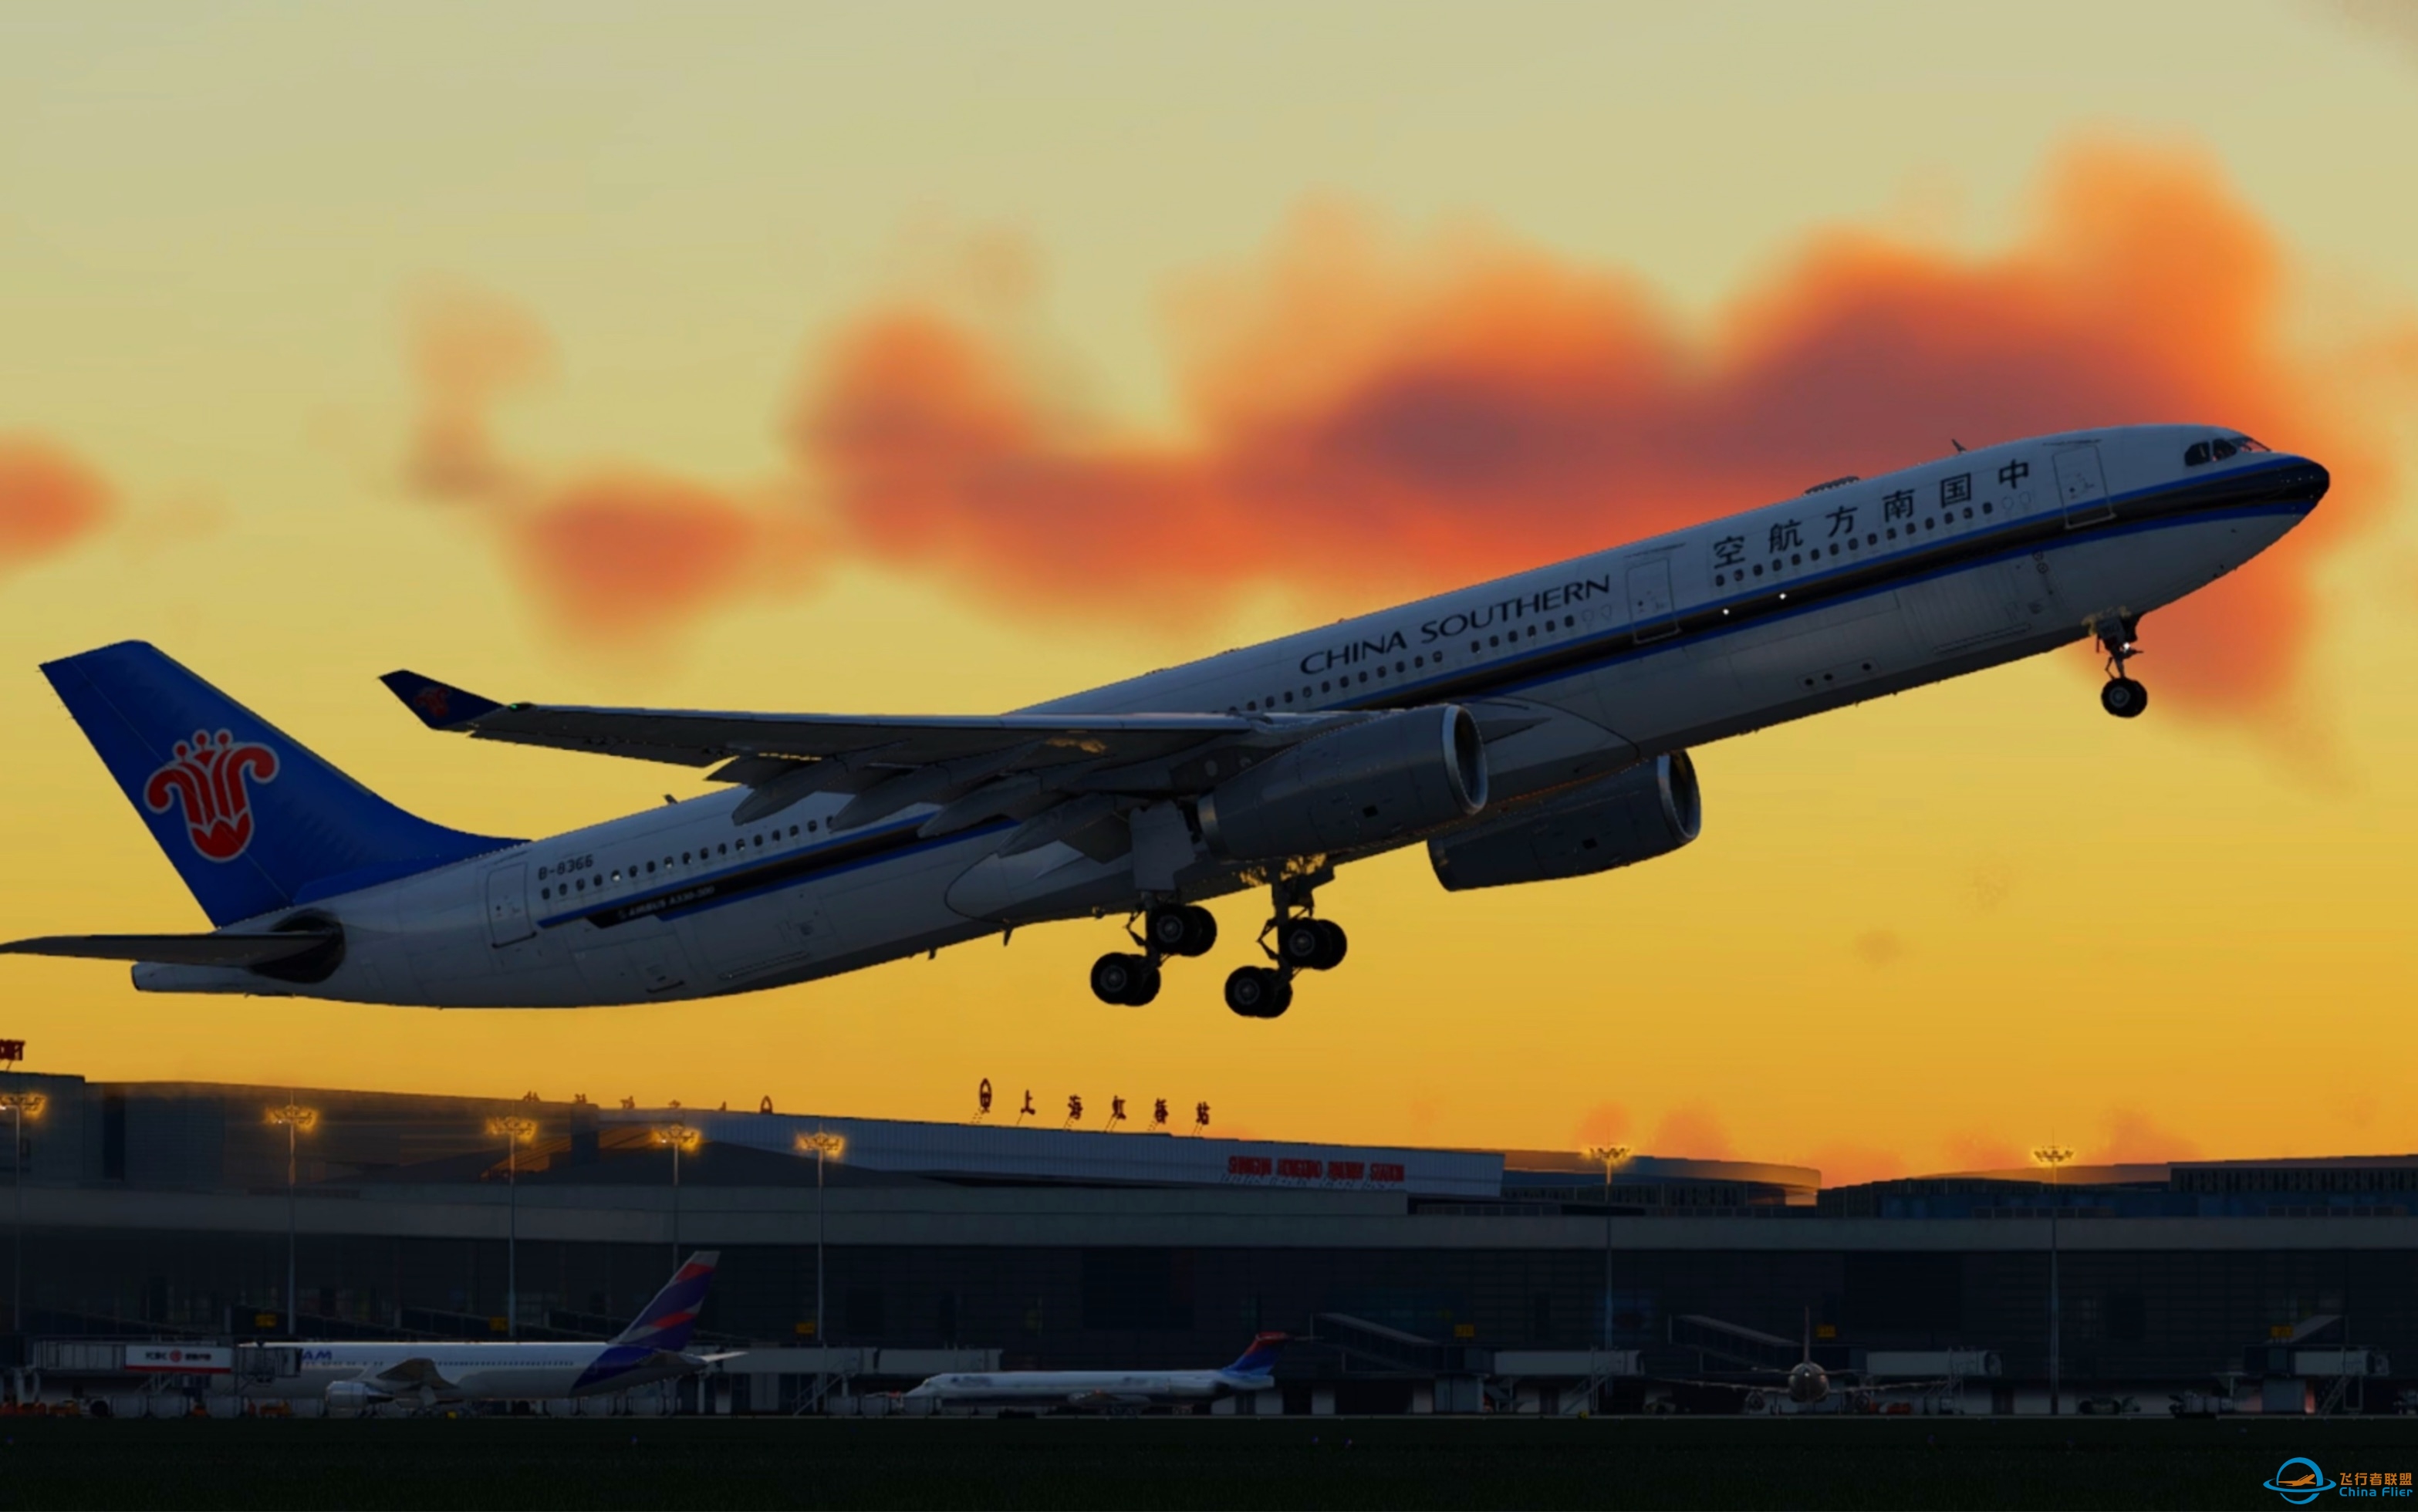 【x-plane12】中国南方航空A330-300夕阳下从上海虹桥机场起飞.-9867 